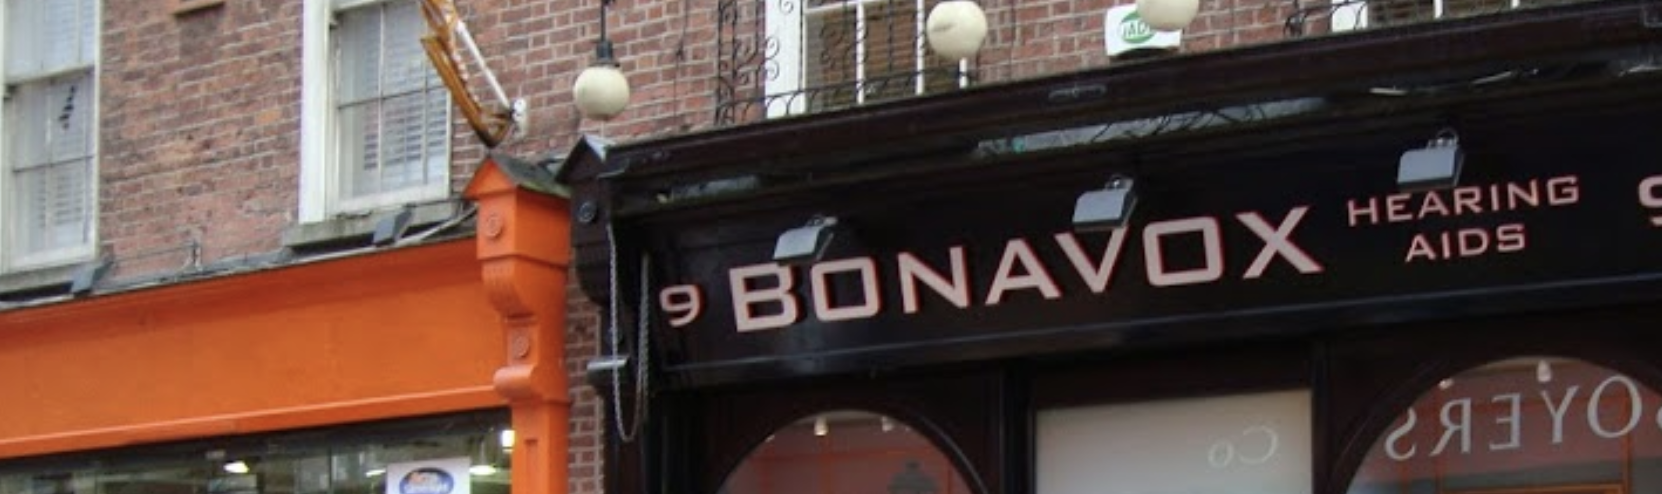 Bonovox Hearing Aids Dublin Ireland